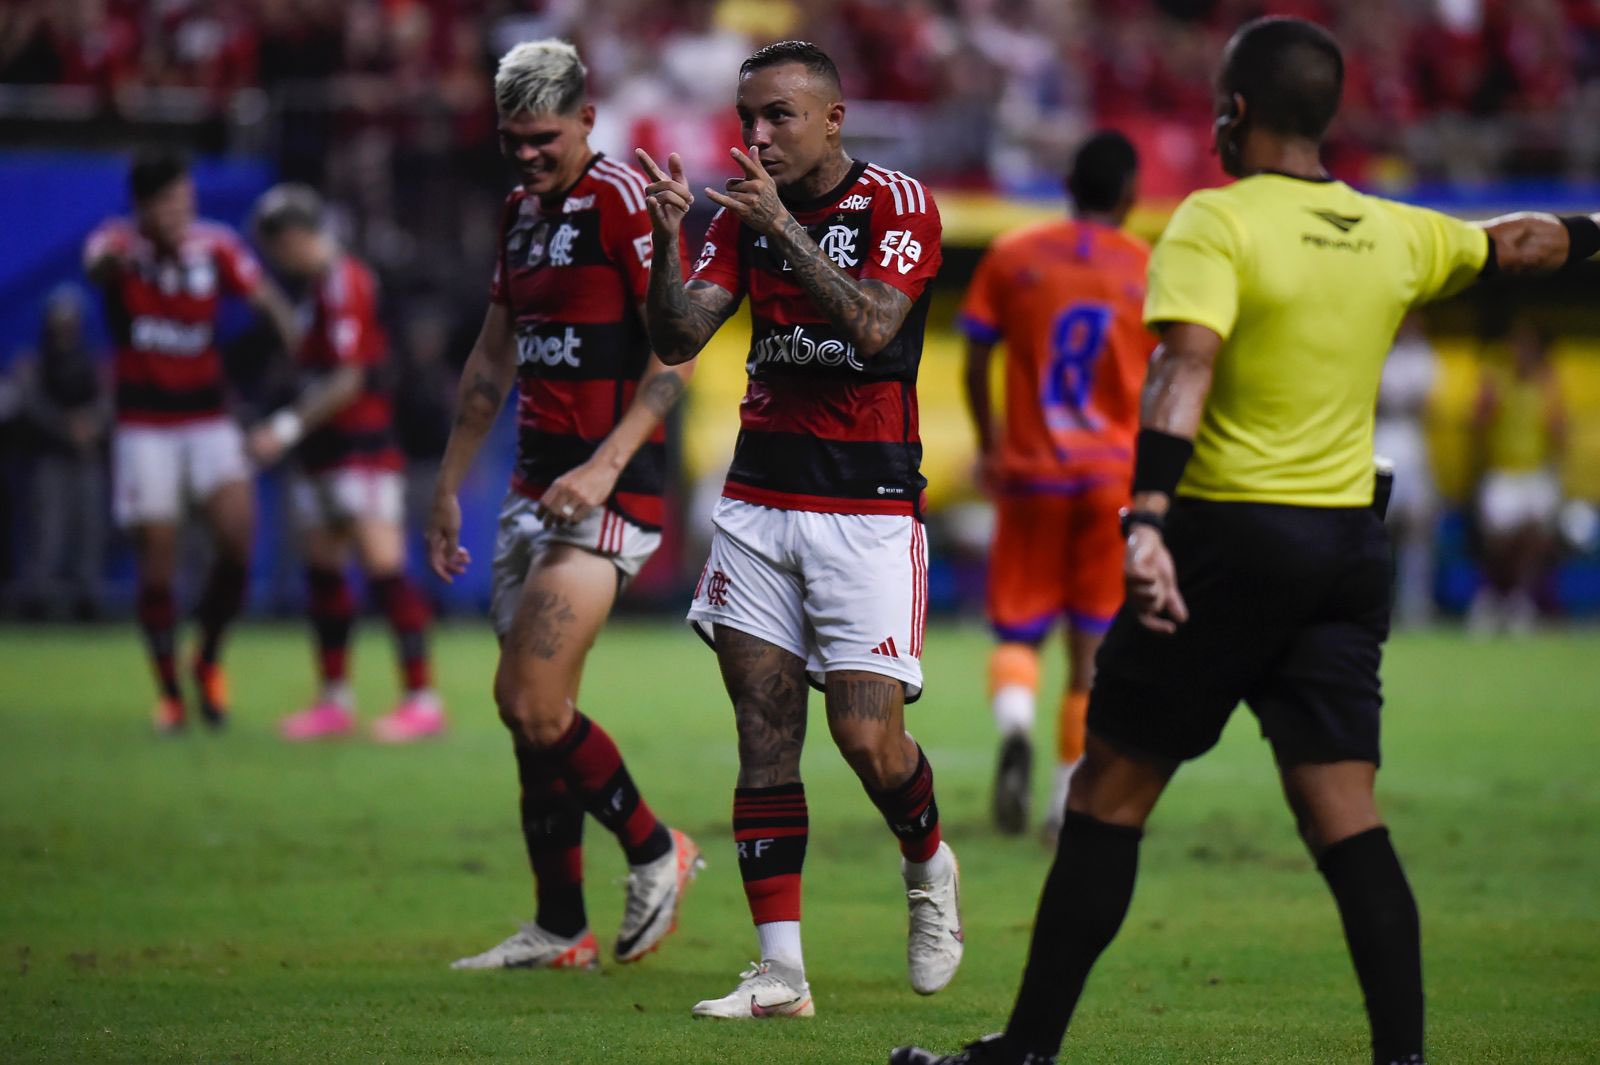 Com gols de Léo Pereira, Pedro, Cebolinha e Varela, o Rubro-Negro fez a alegria dos mais de 45 mil torcedores presentes na Arena da Amazônia